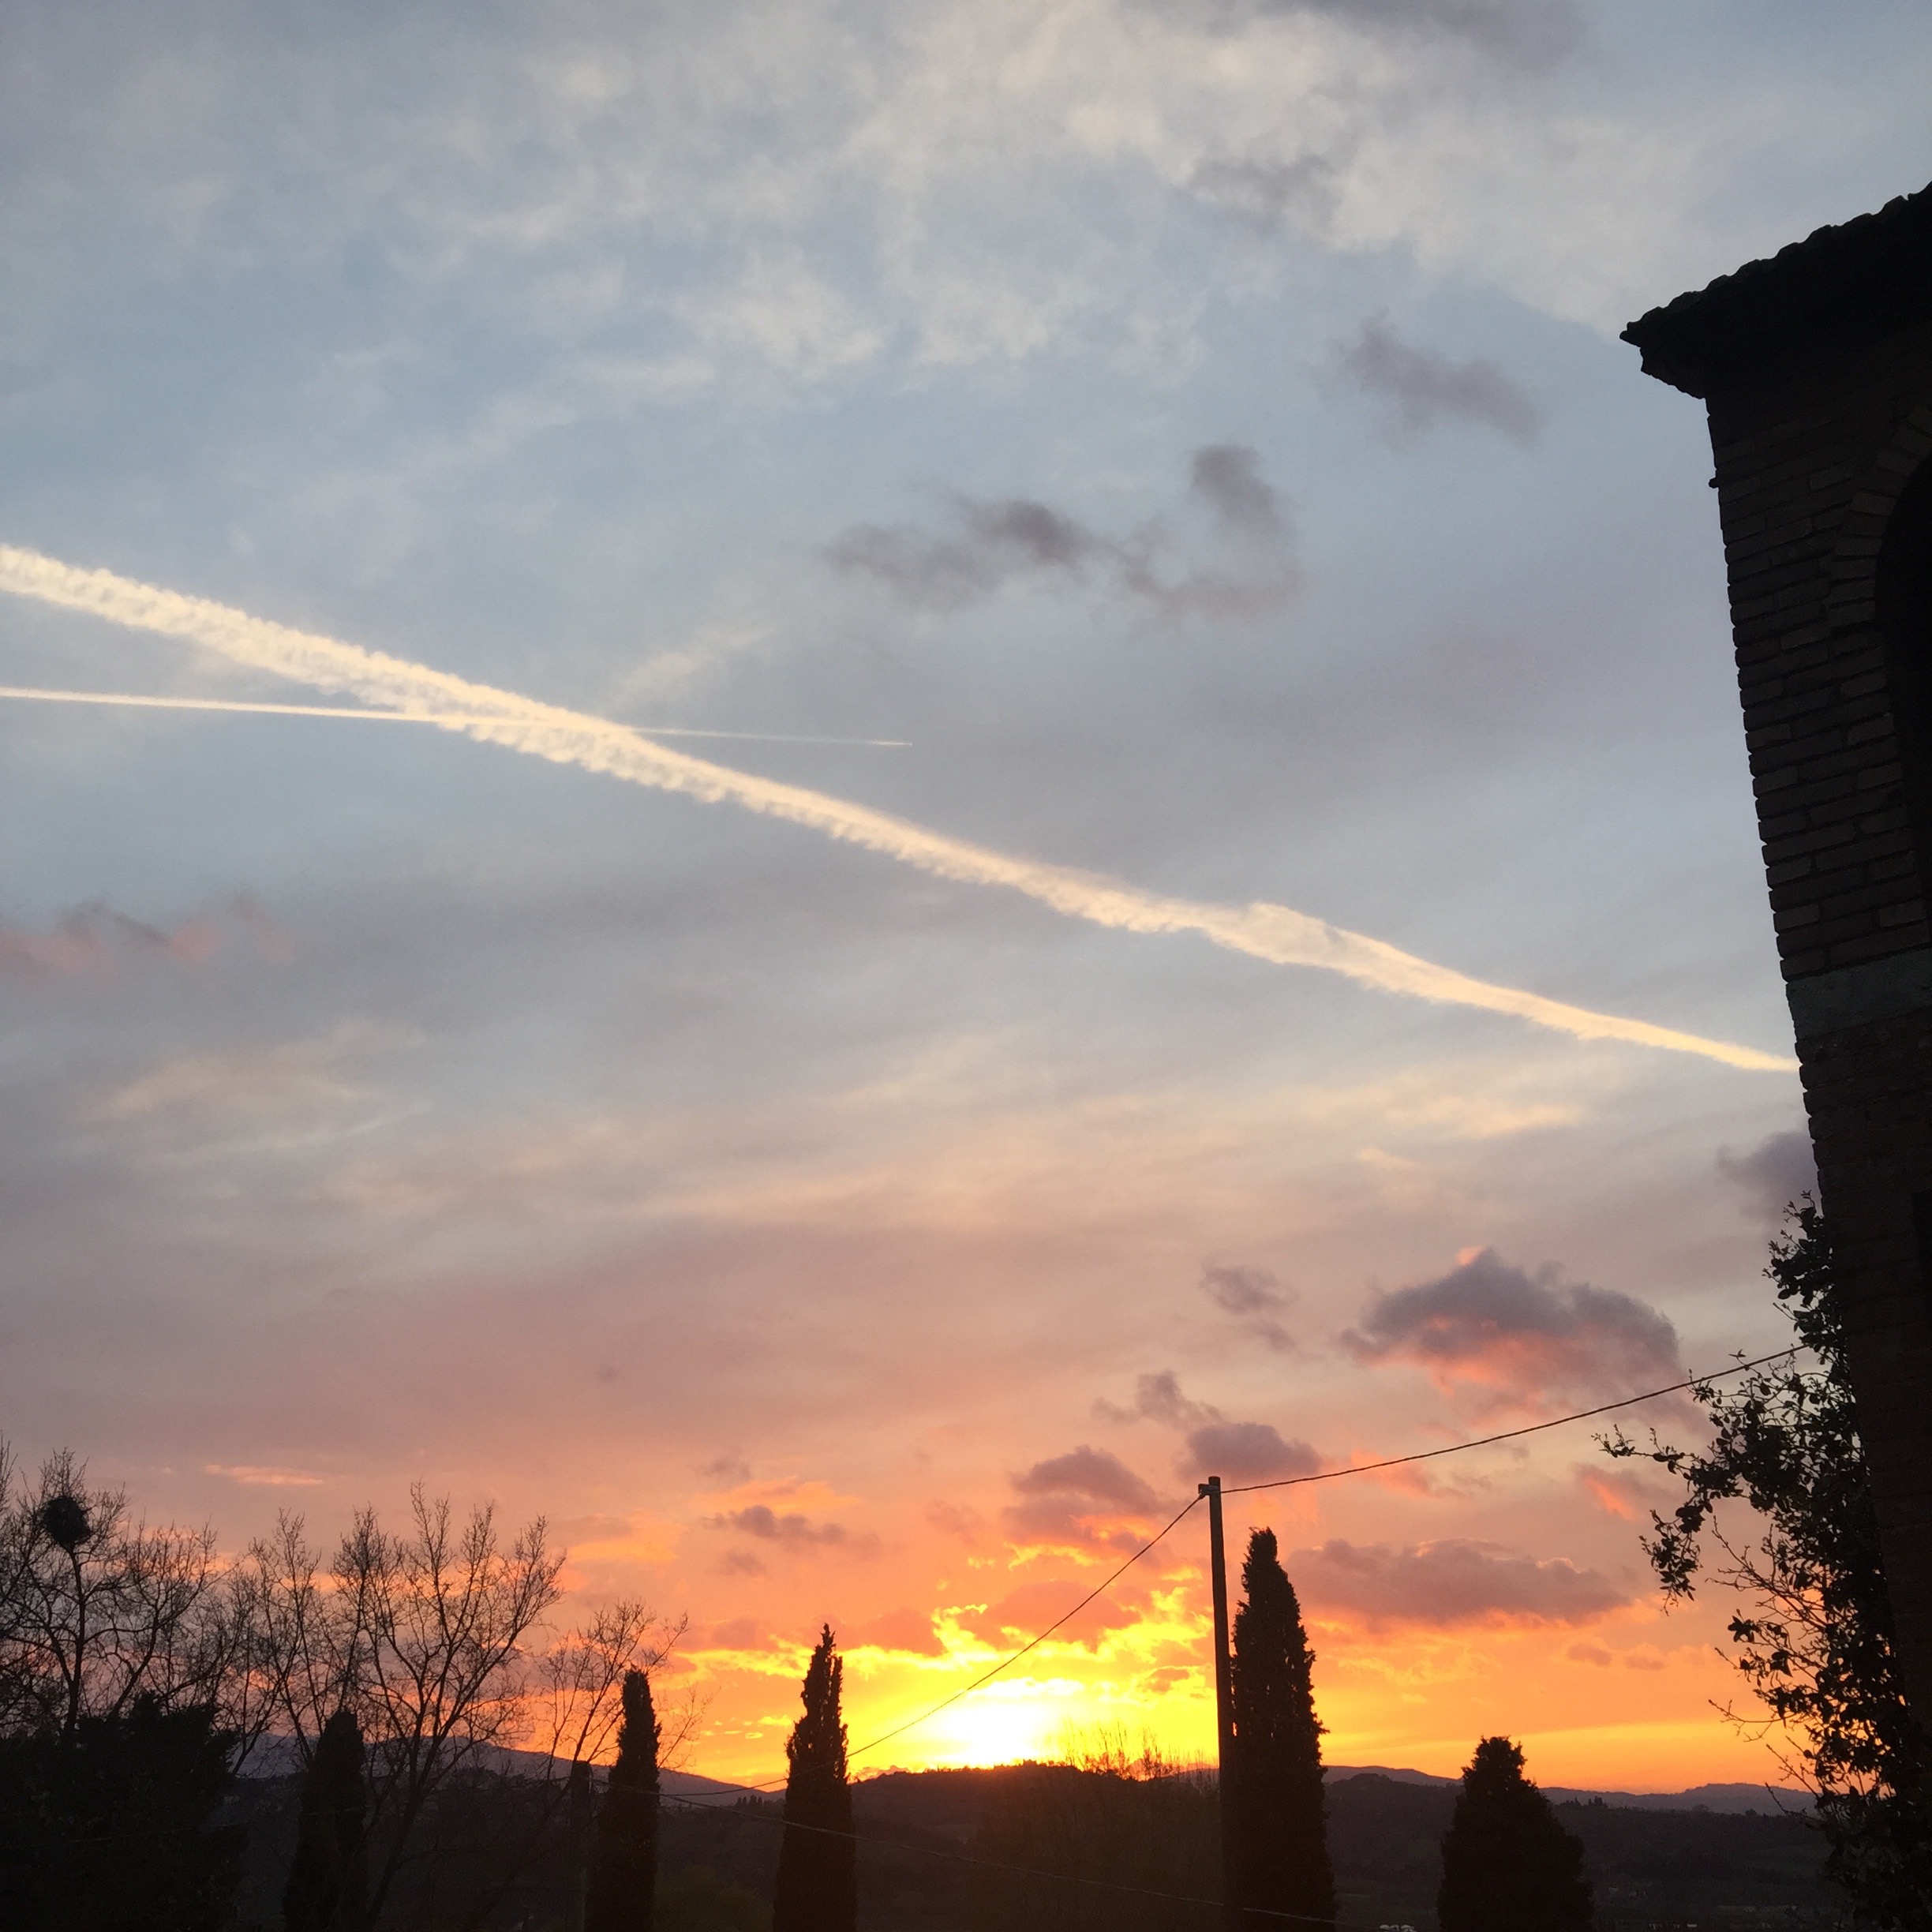 Sunset over tuscany